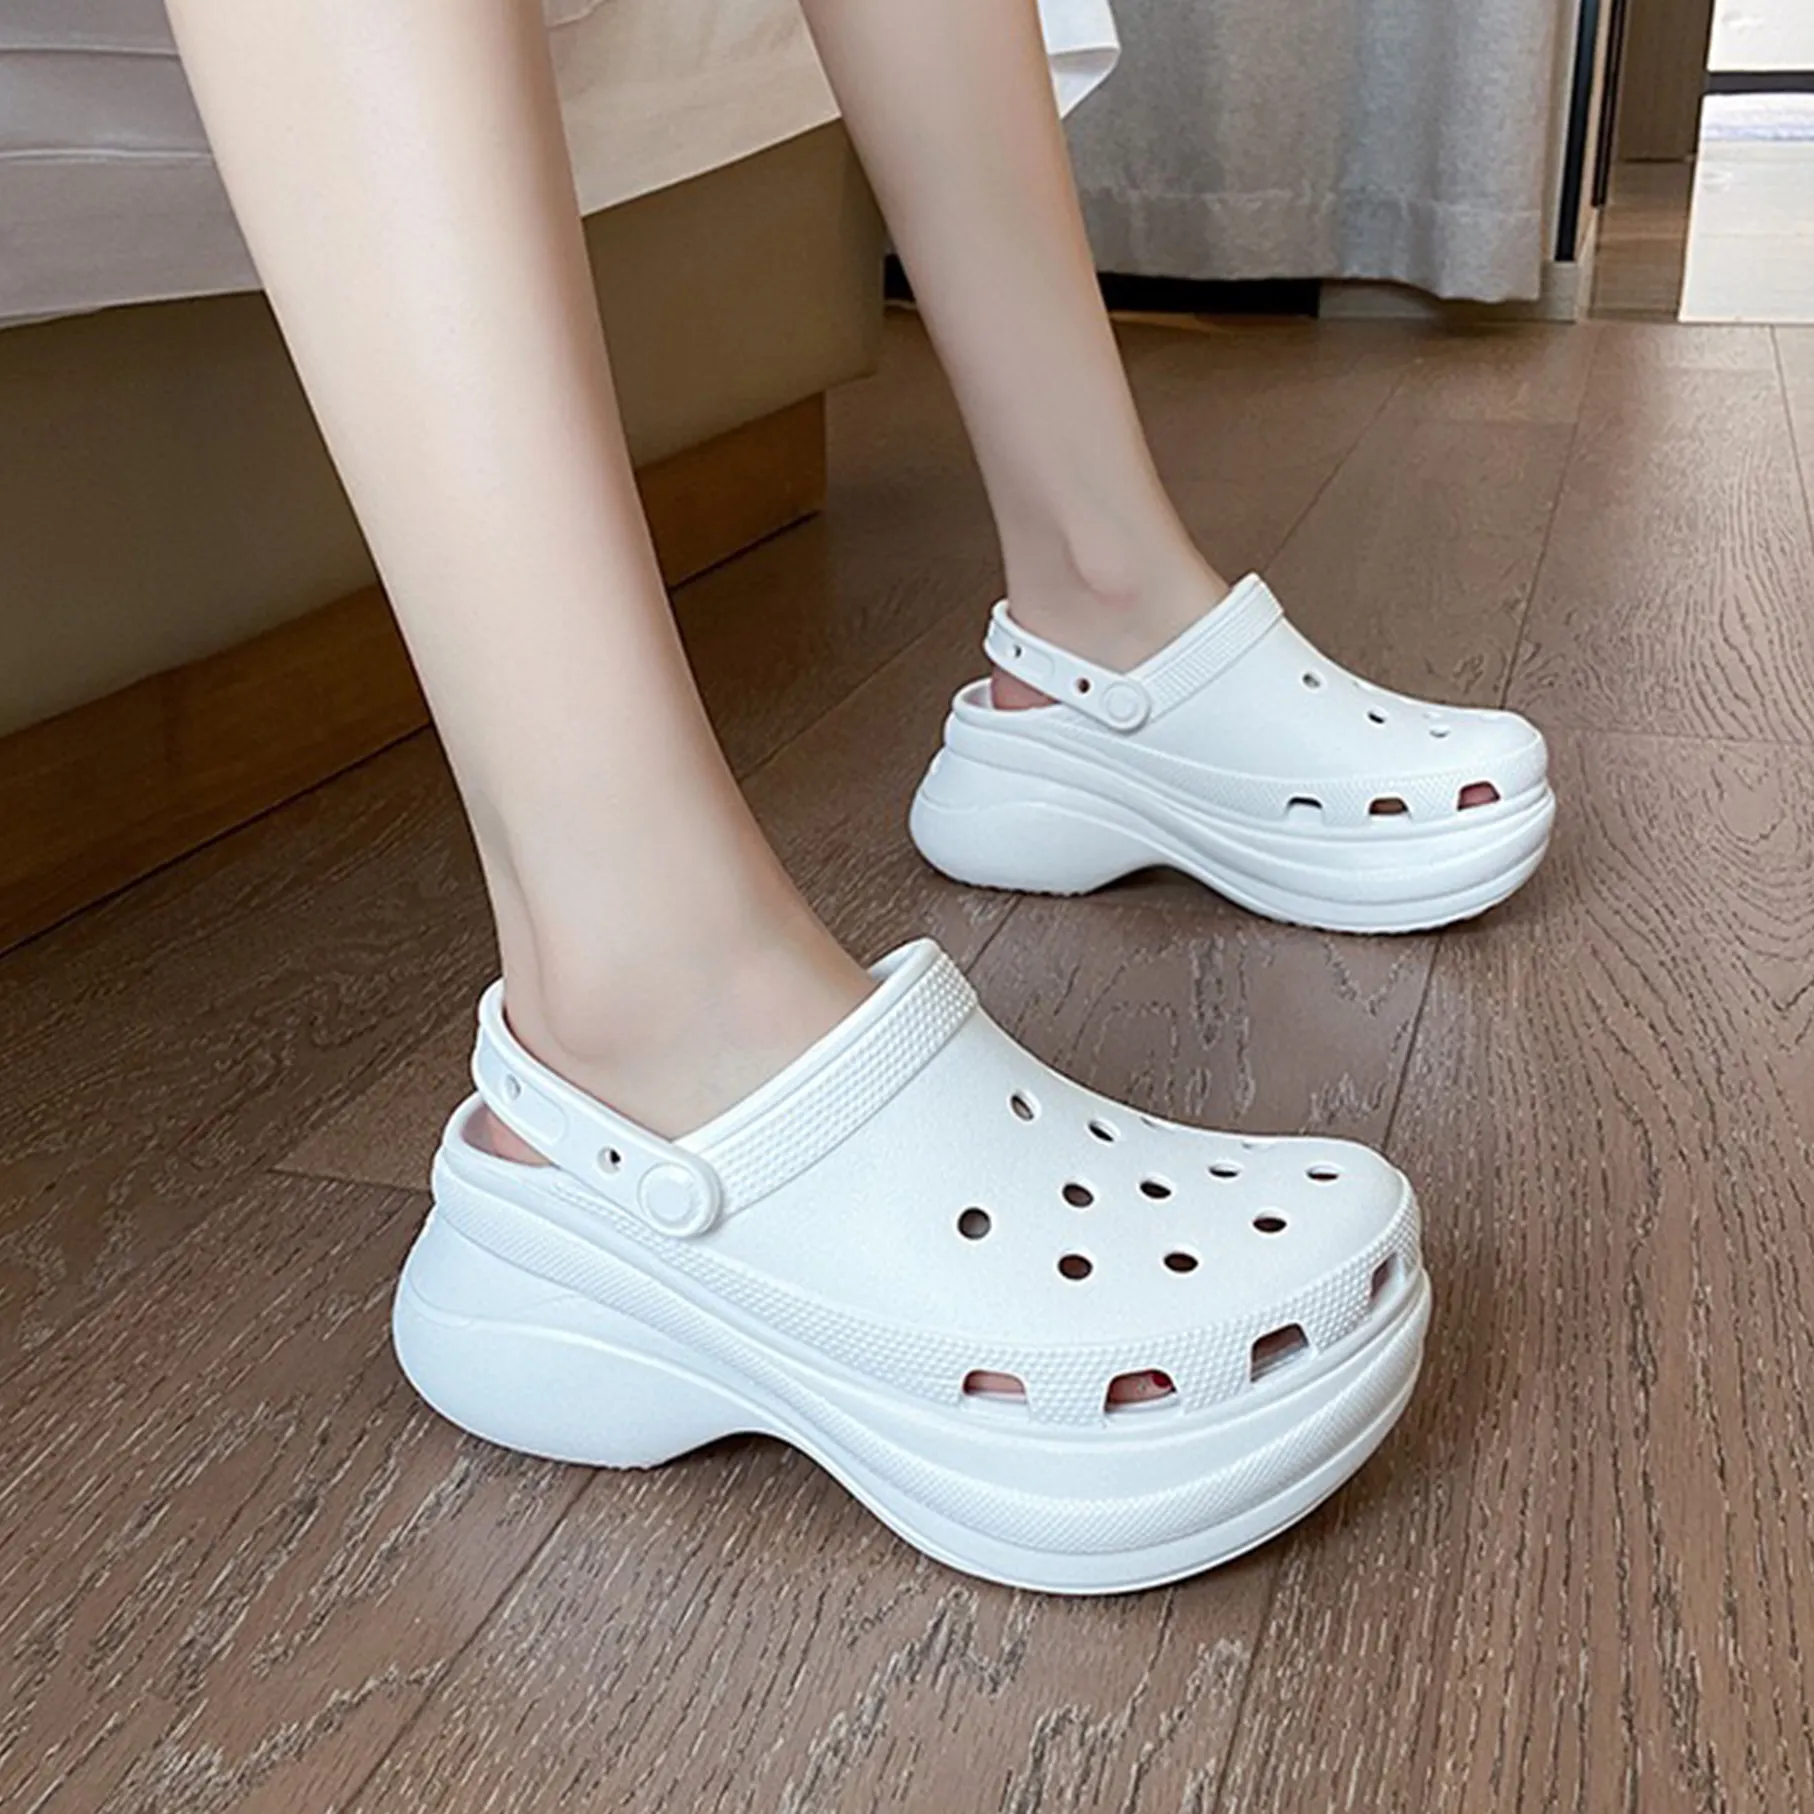 EVA Sport Clog Sandals Women's Hole Clogs Platform Sandals Breathable Garden Shoes